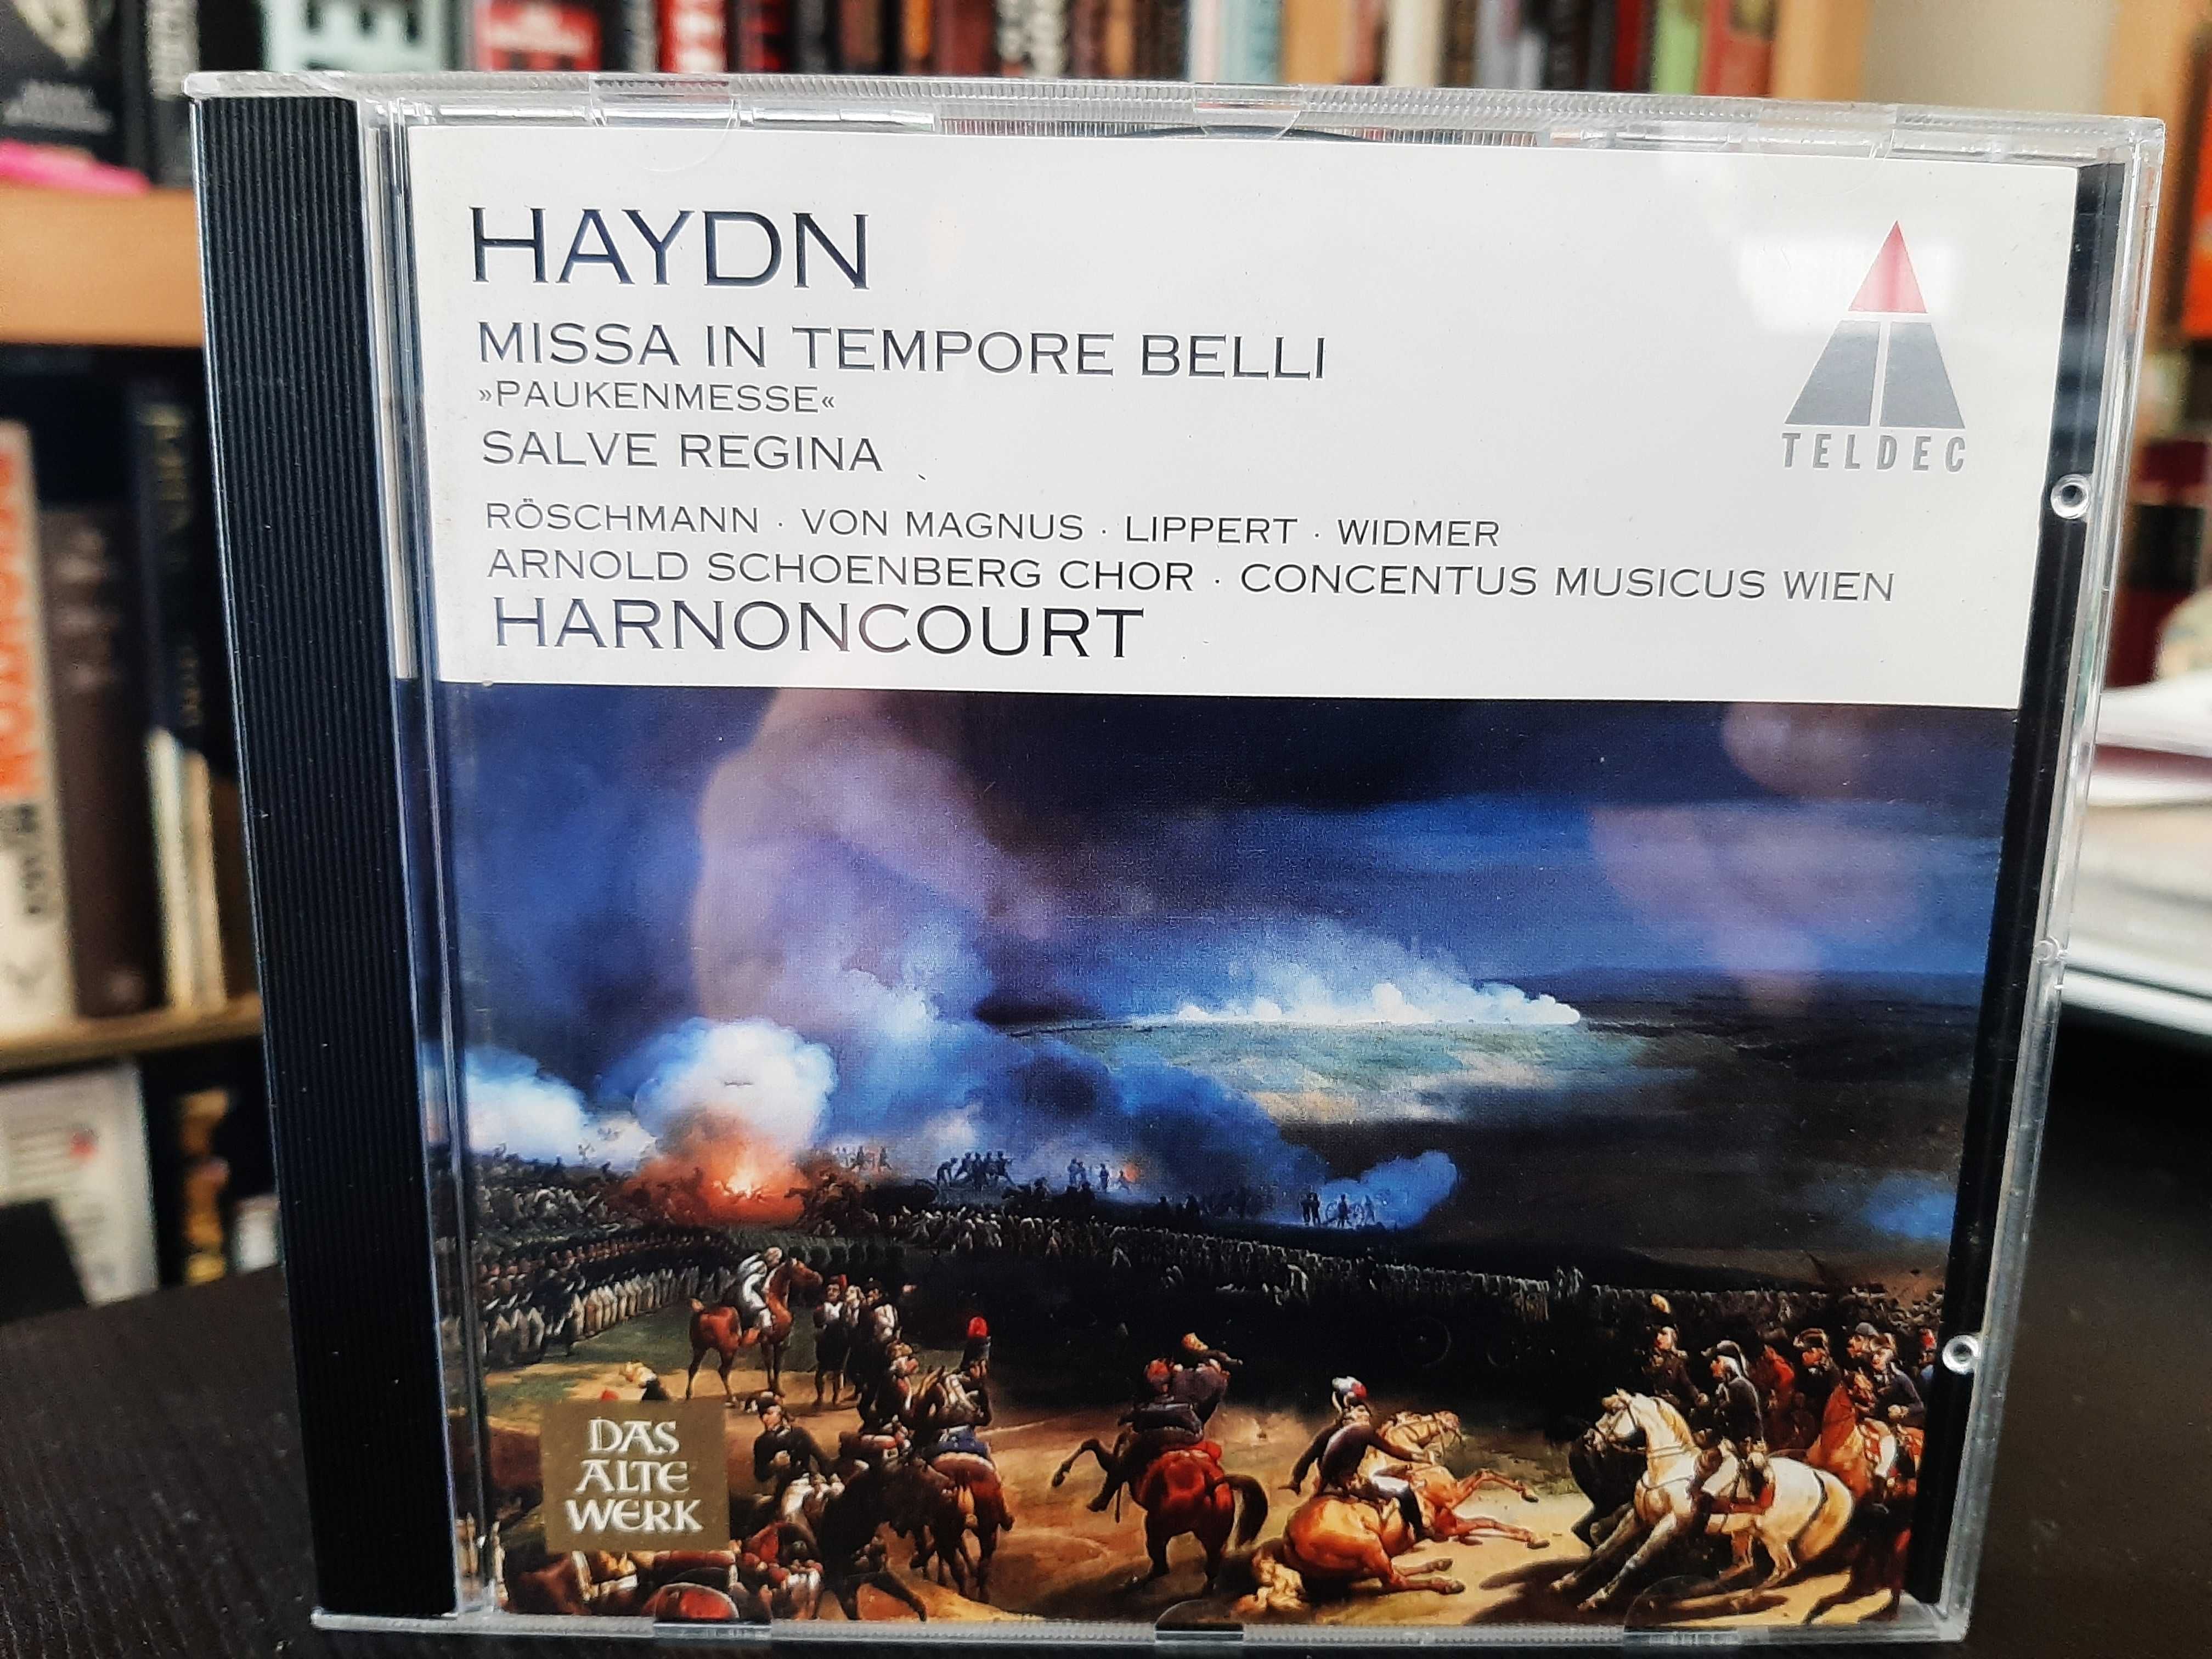 Haydn – Missa In Tempore Belli, Salve Regina – Concentus, Harnoncourt